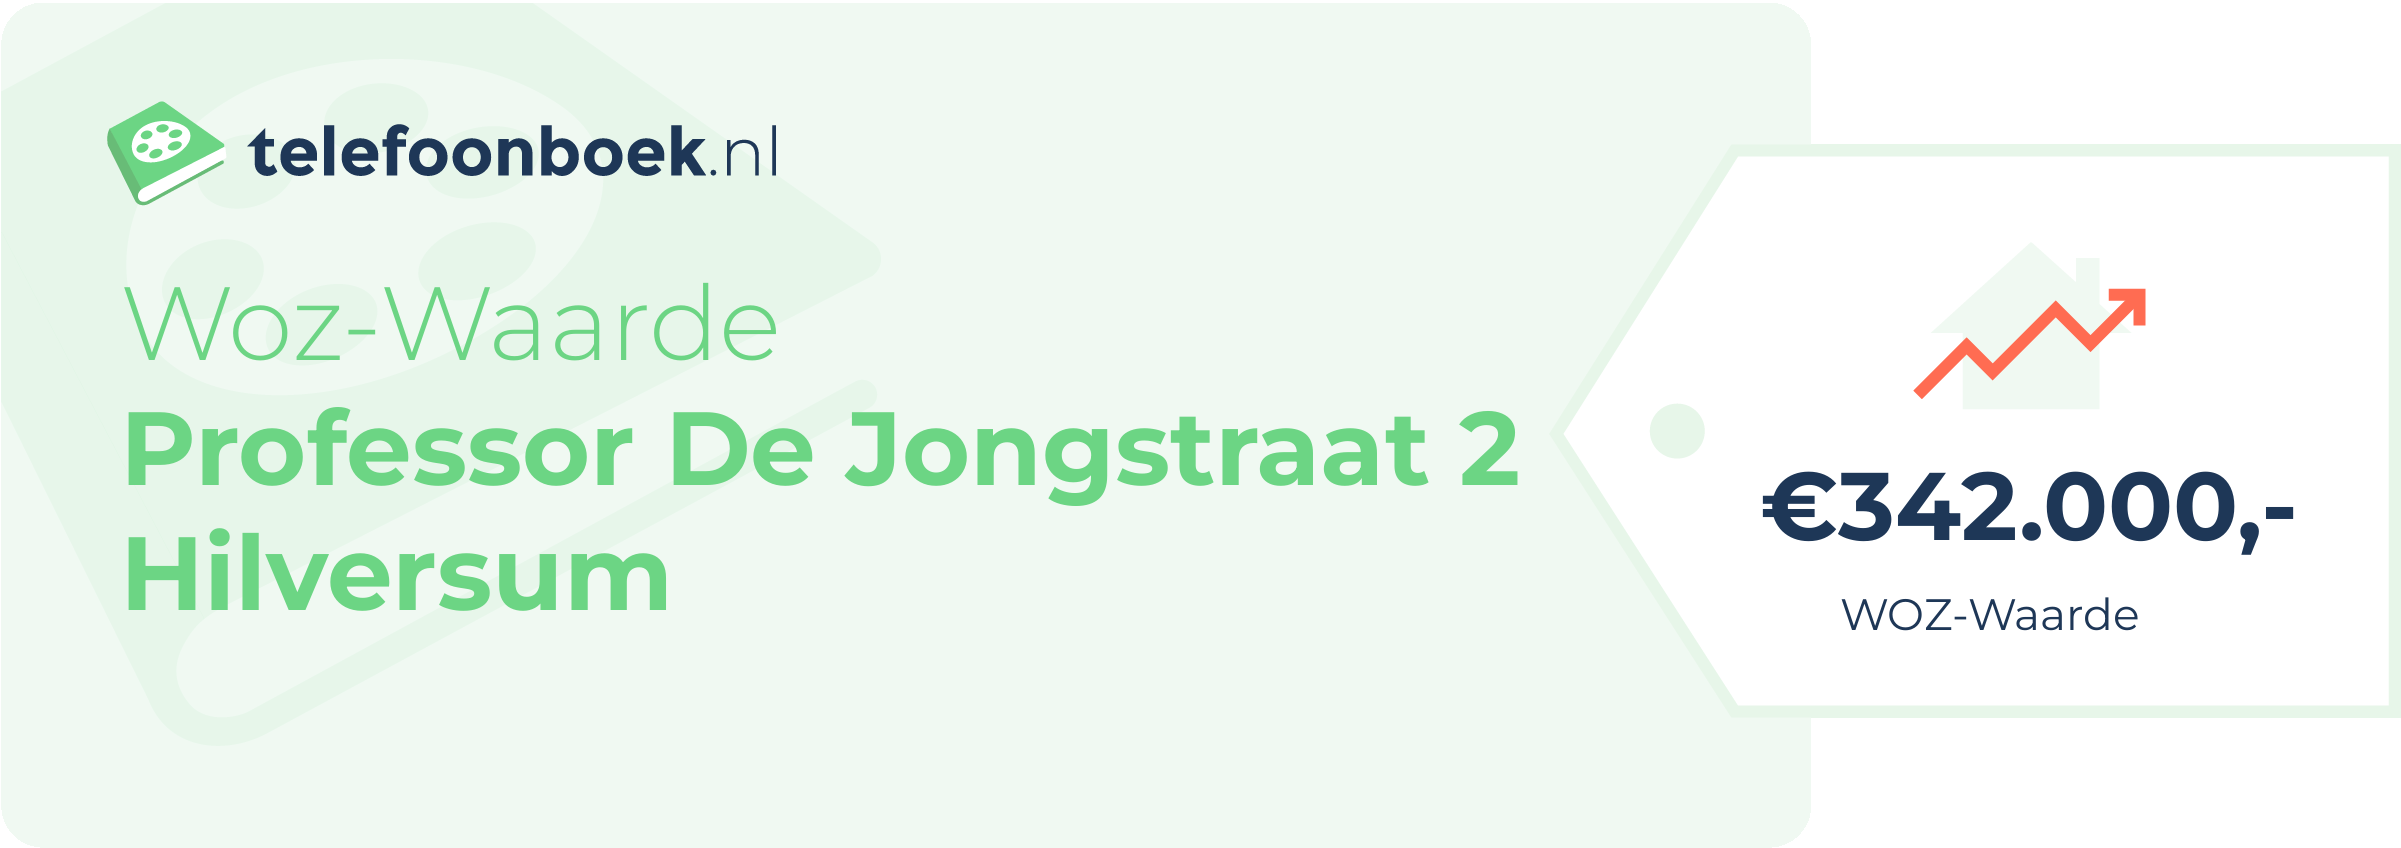 WOZ-waarde Professor De Jongstraat 2 Hilversum